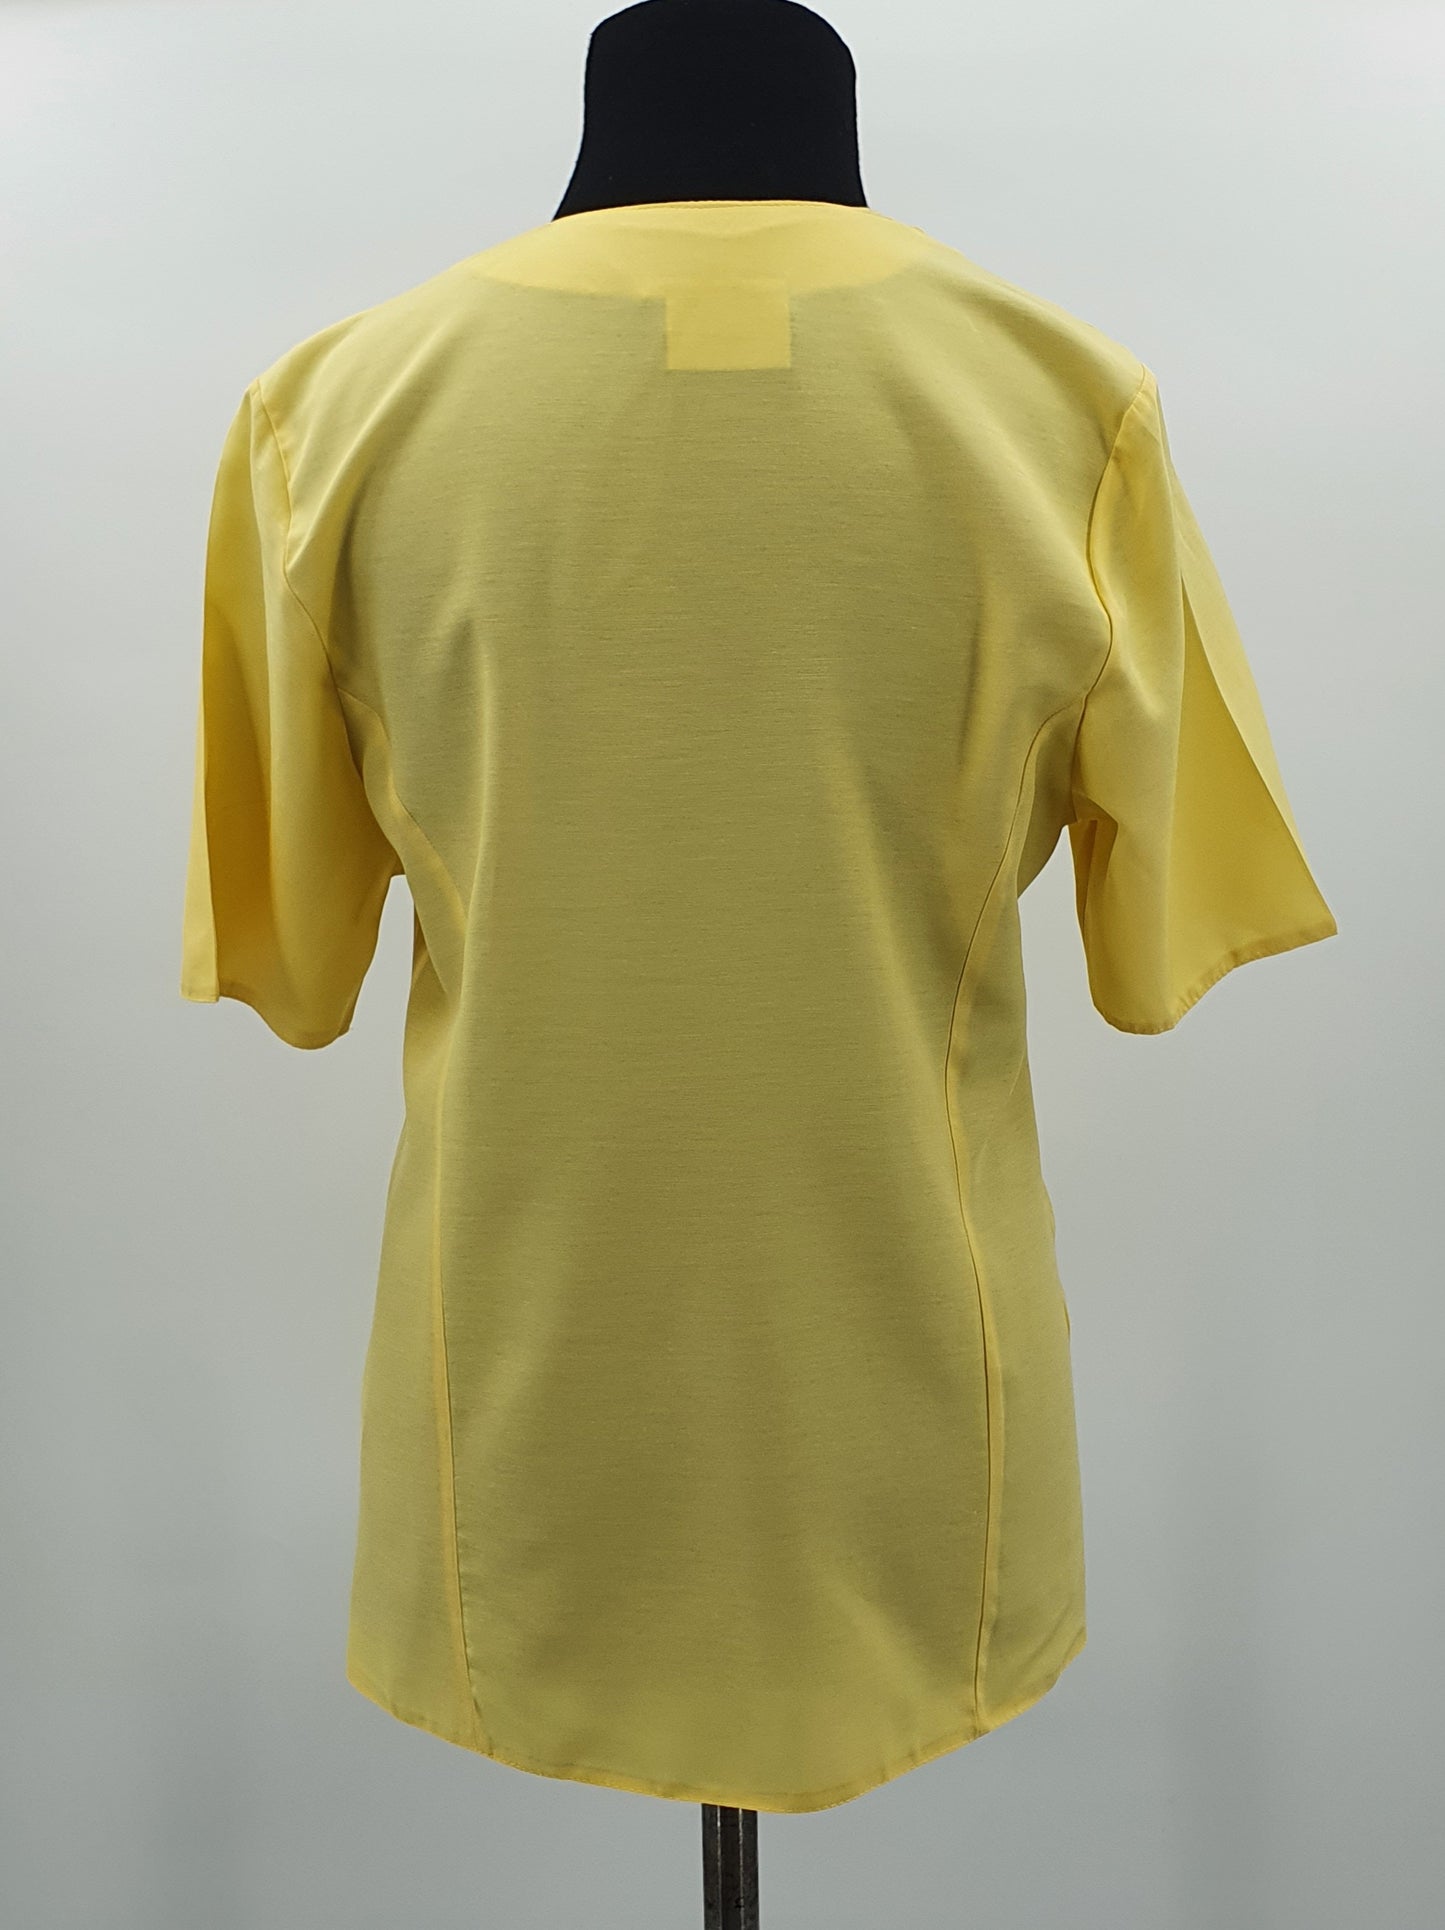 Lindex, vaaleankeltainen paita, 90-luku, koko 38-40